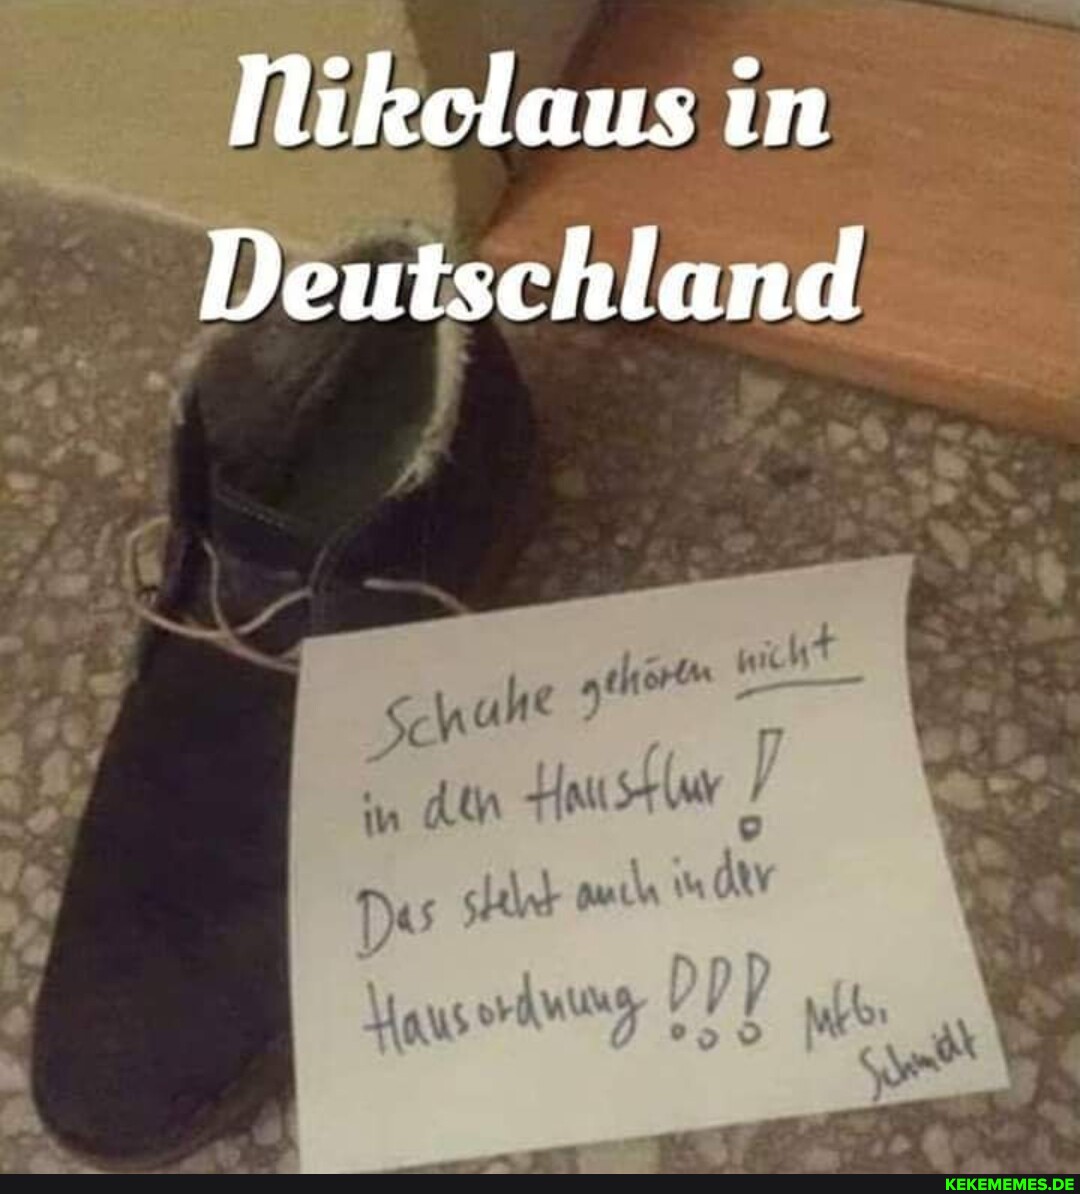 Nikclaus in Deutschland all mD) by,